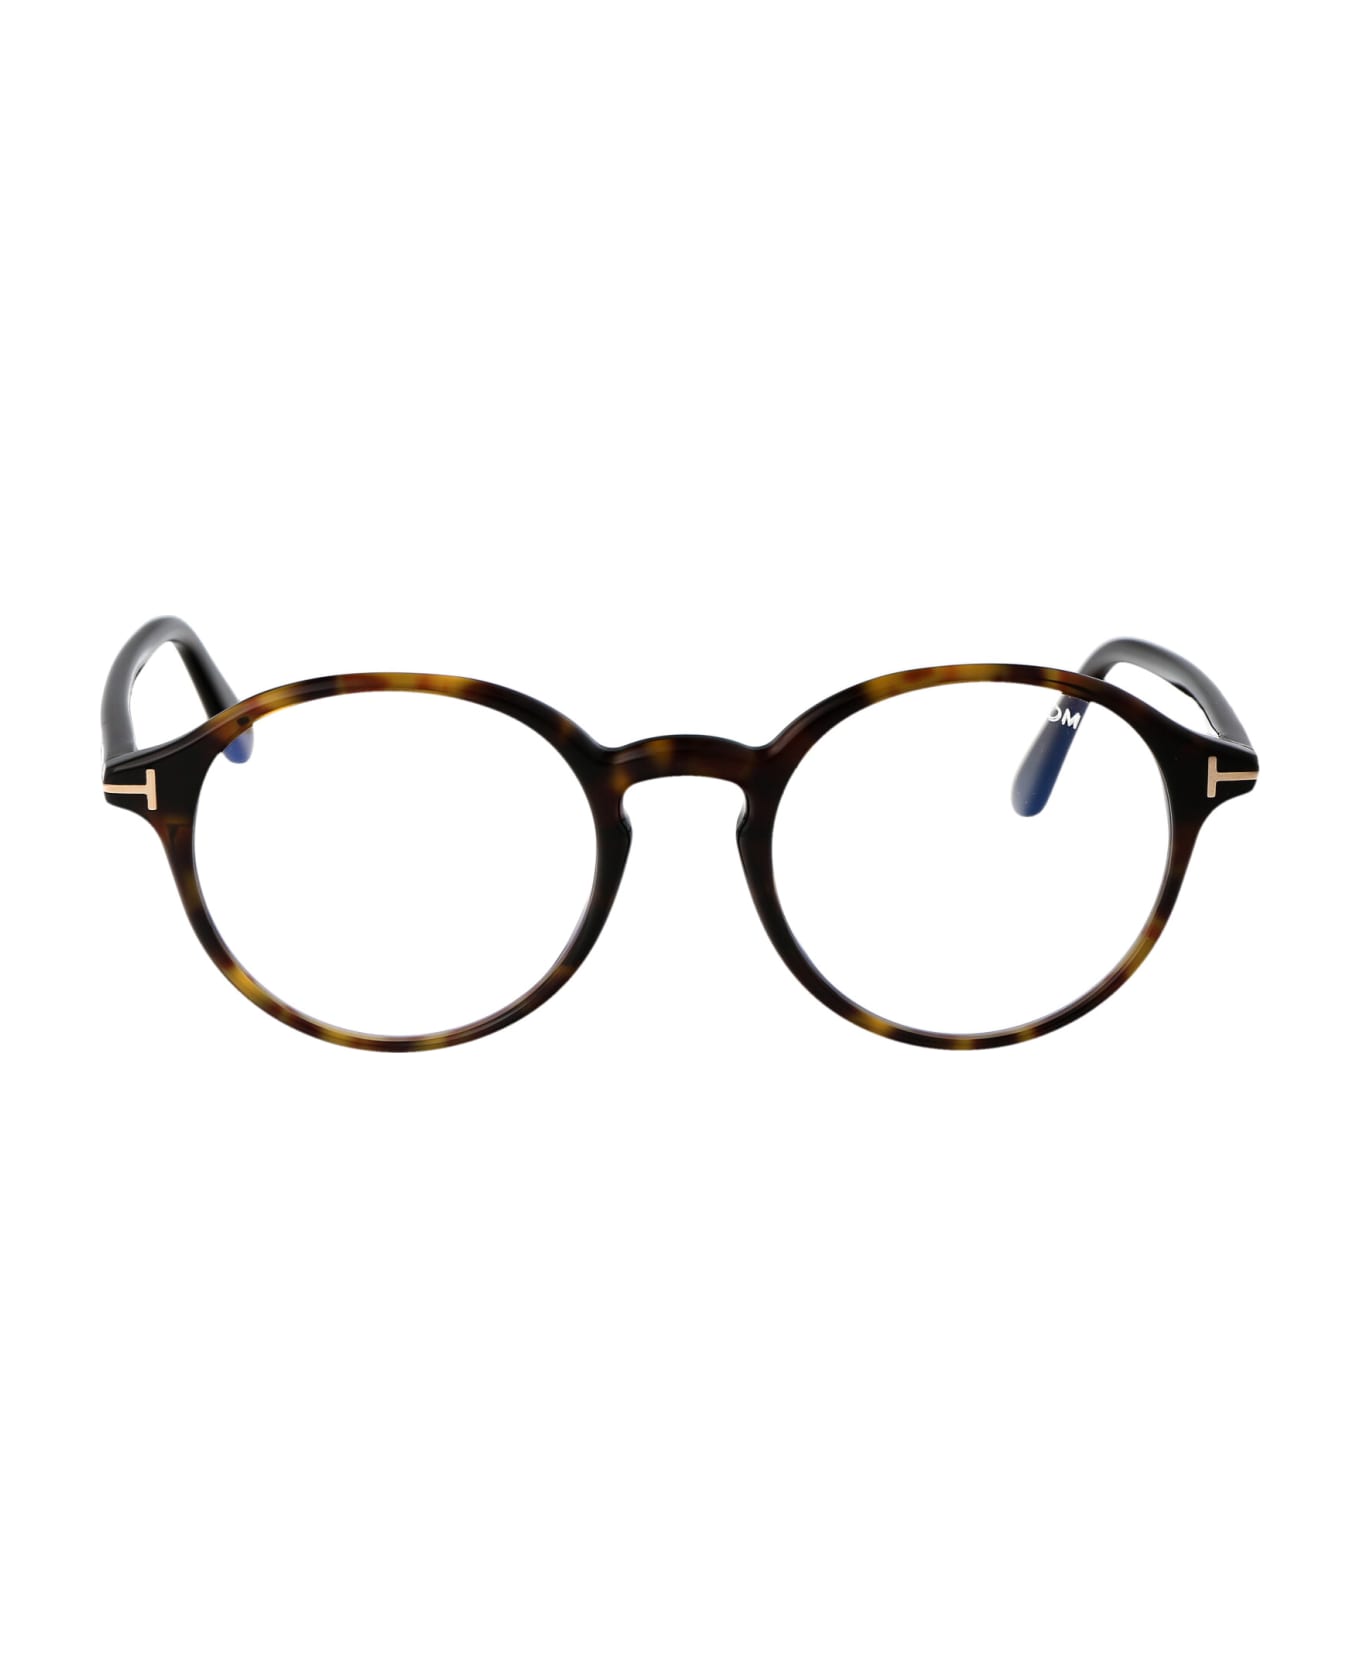 Tom Ford Eyewear Ft5867-b Glasses - 052 Avana Scura アイウェア